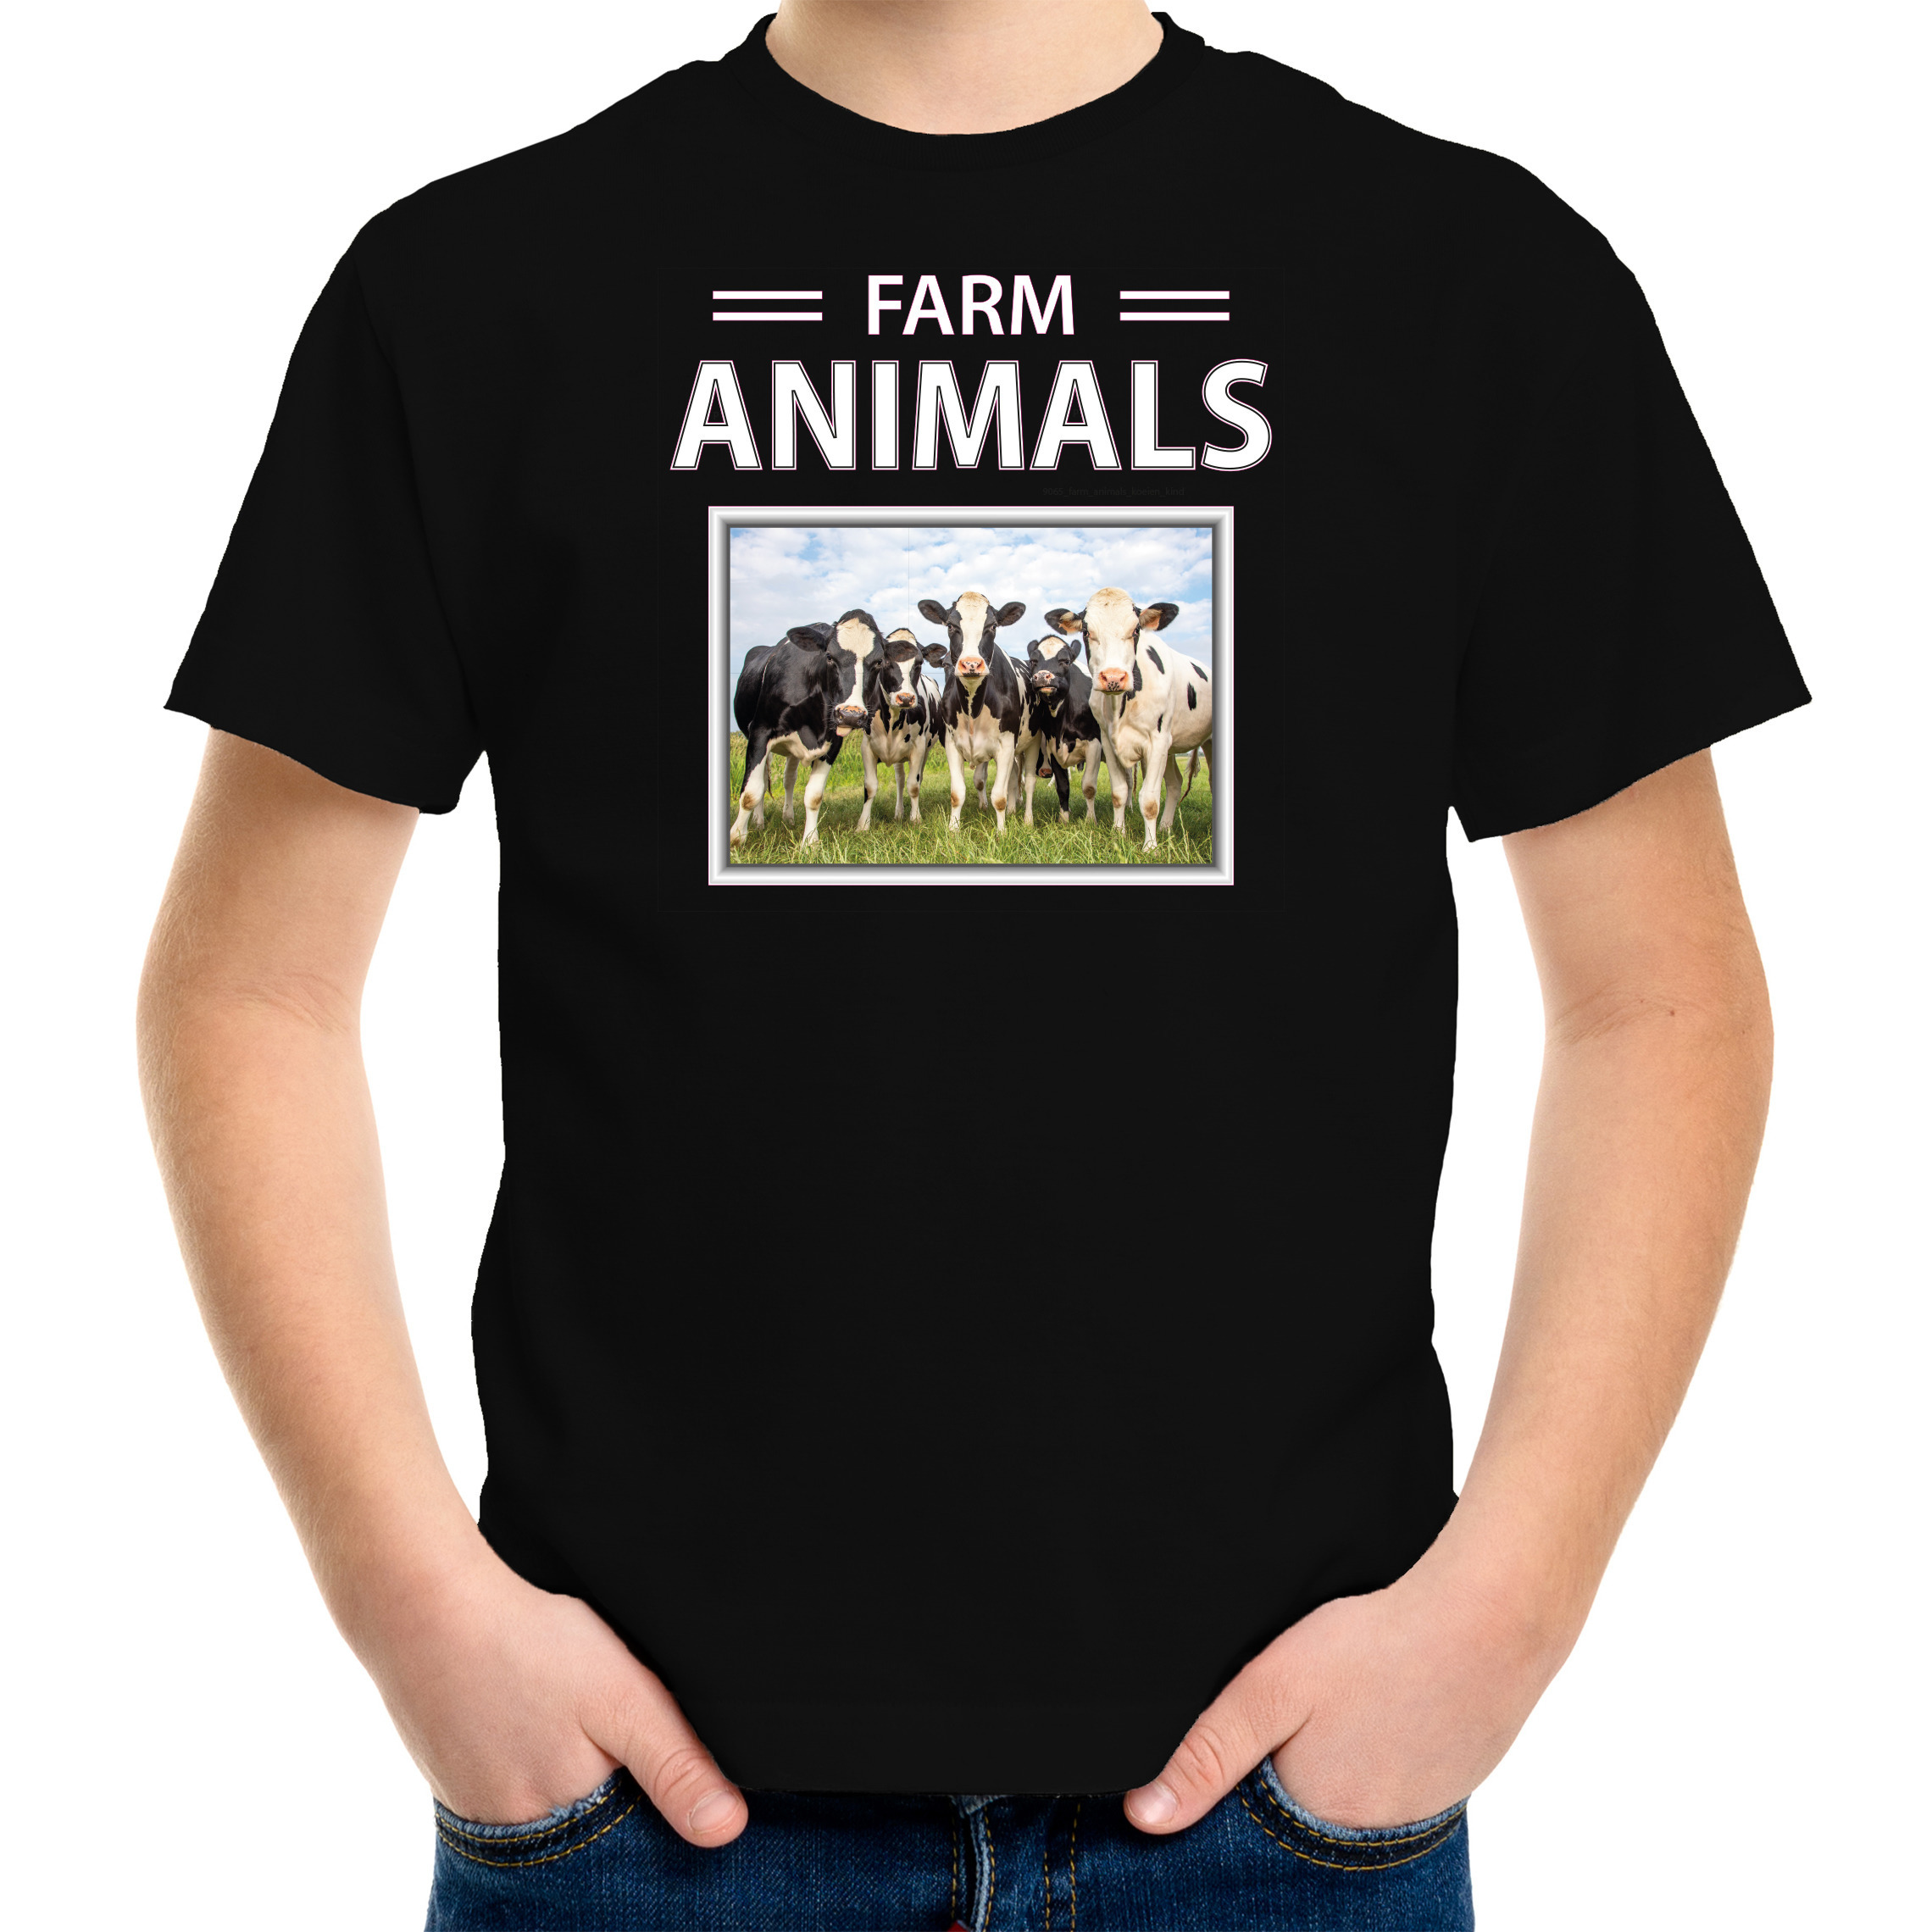 Kudde koeien t-shirt met dieren foto farm animals zwart voor kinderen